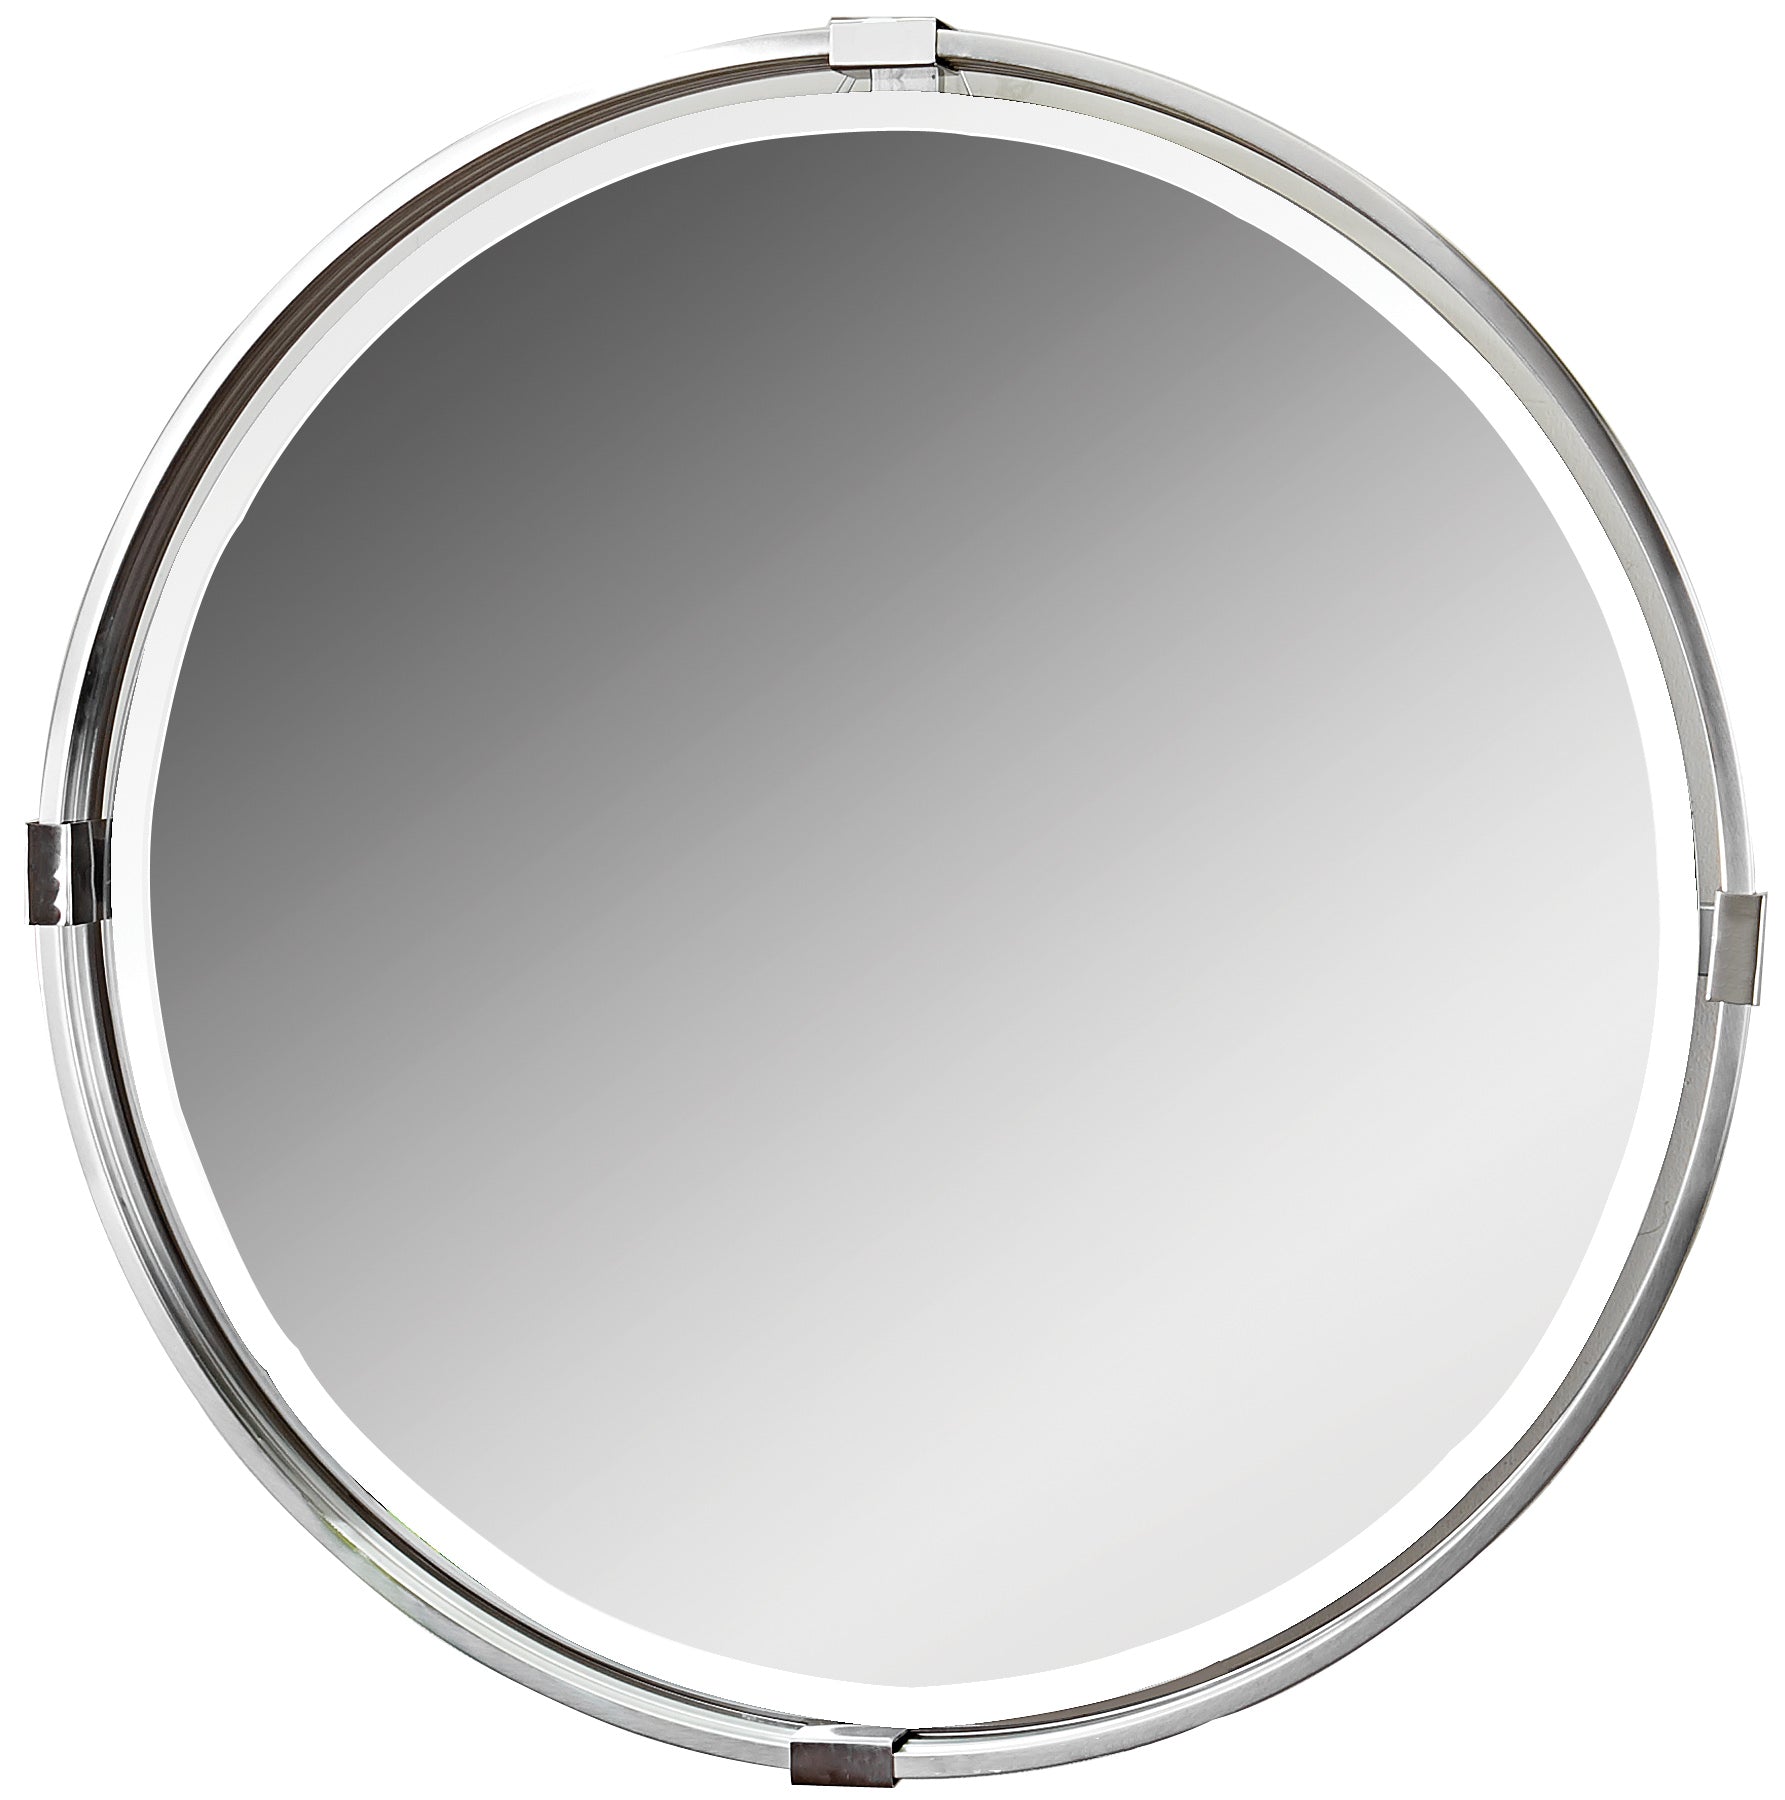 Uttermost Tazlina Brushed Nickel Round Mirror